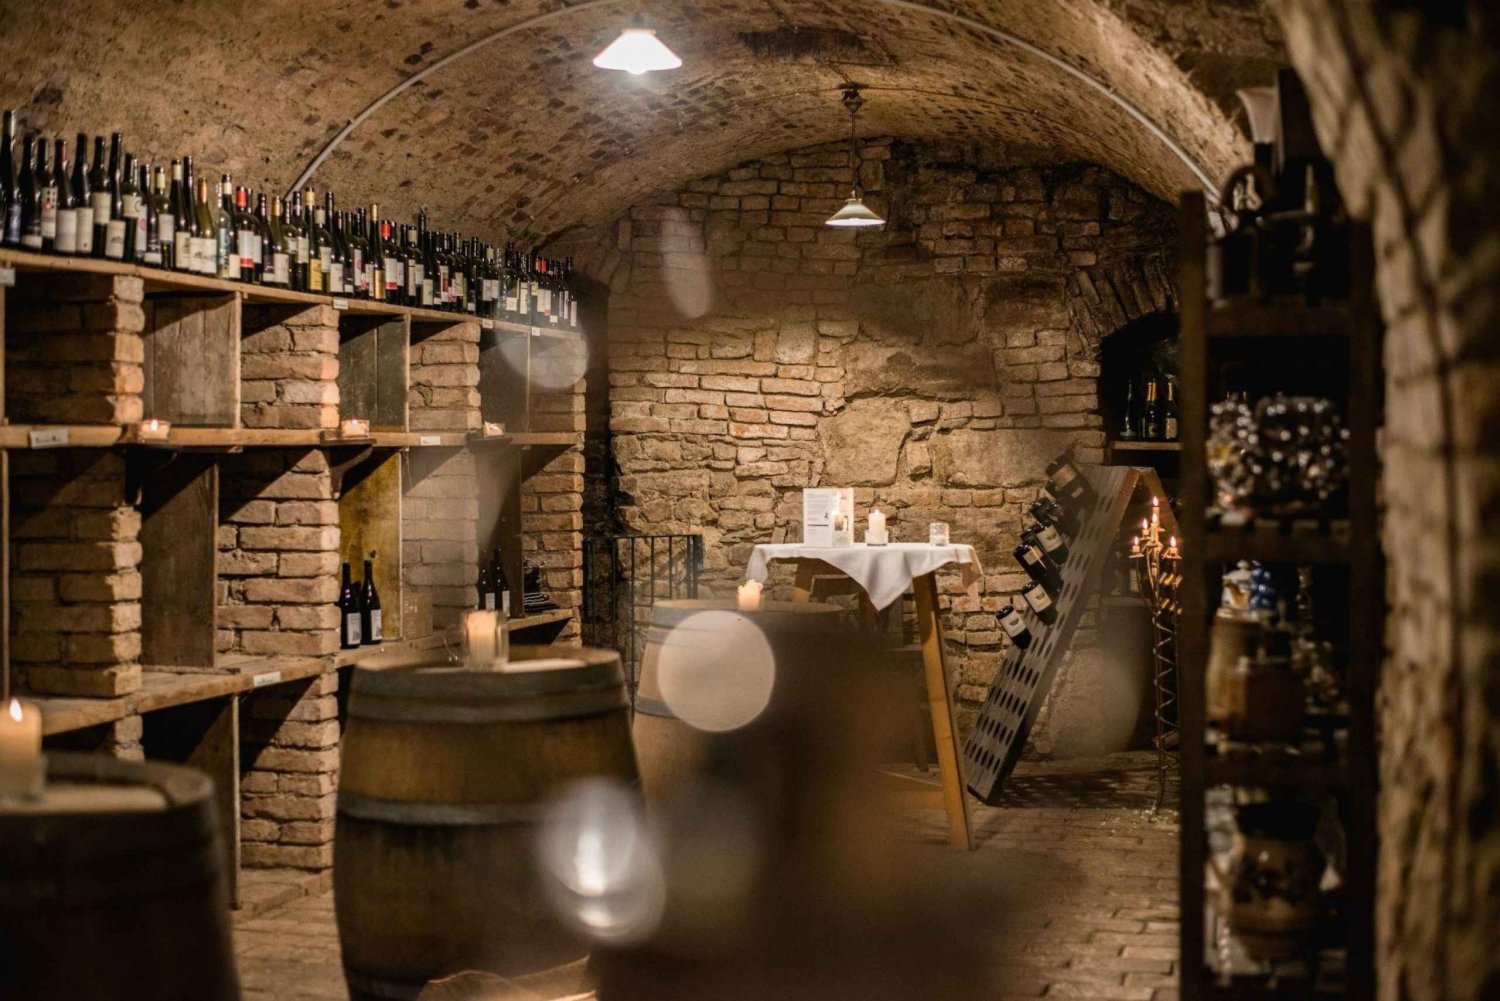 Wenen: Historische wijnkelder rondleiding